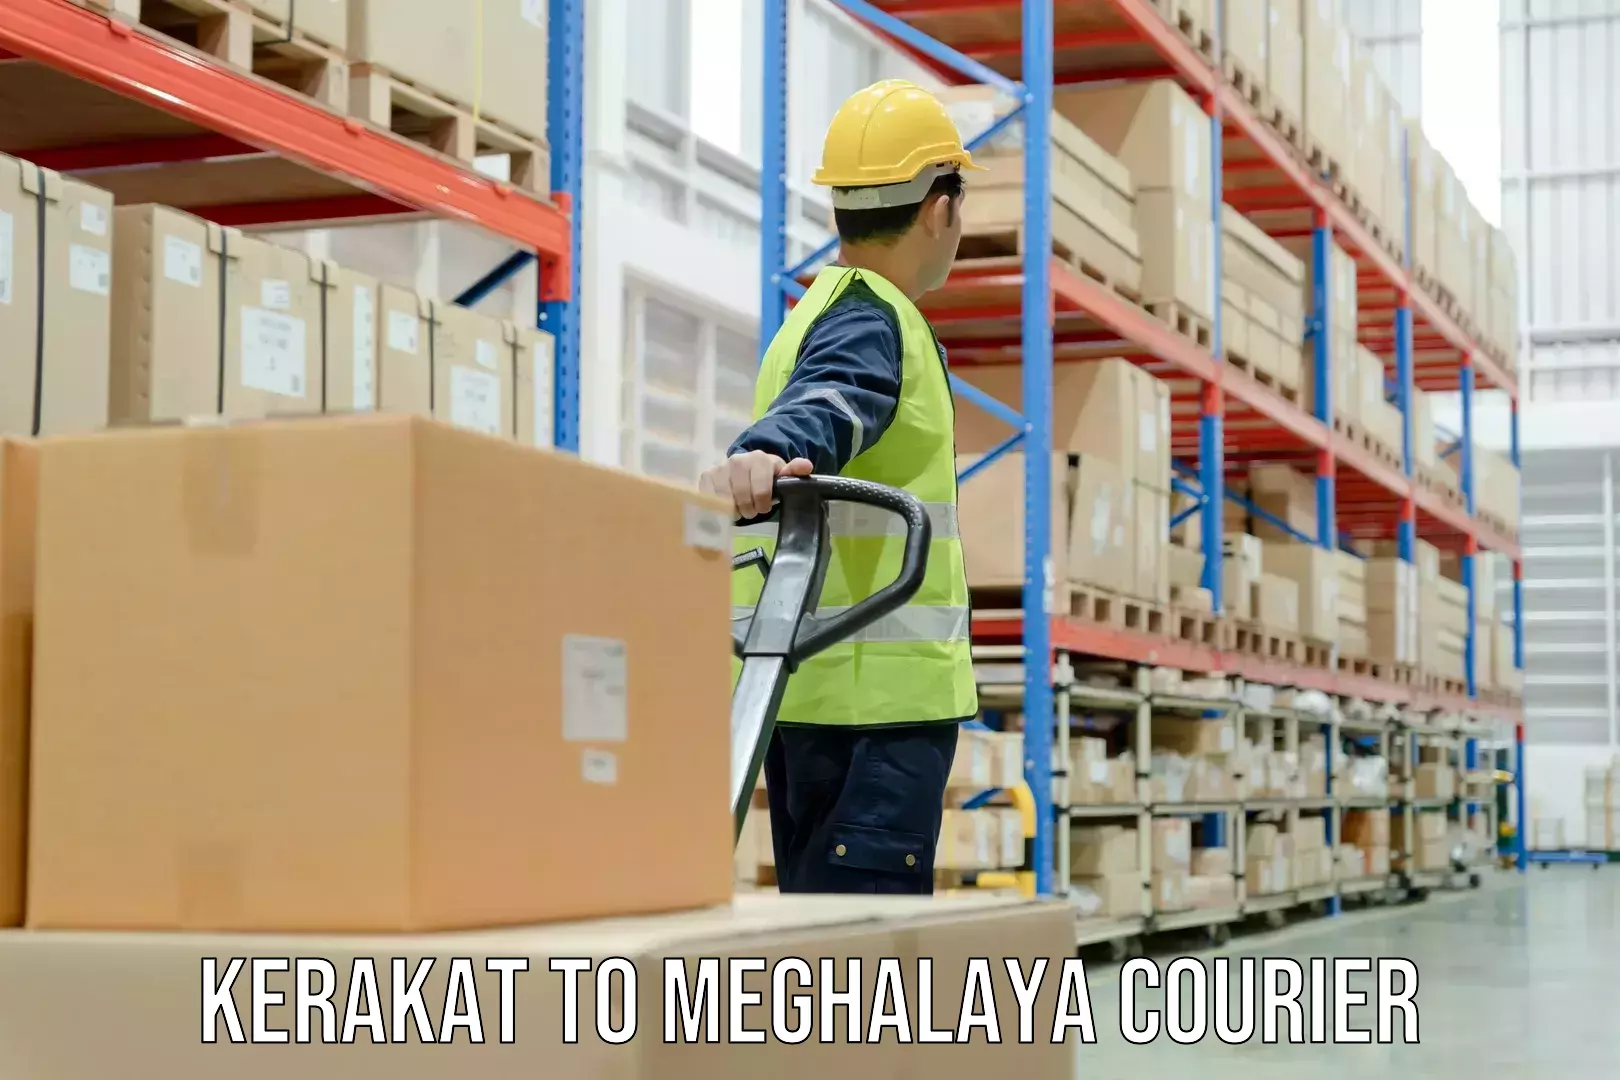 Comprehensive freight services Kerakat to Meghalaya